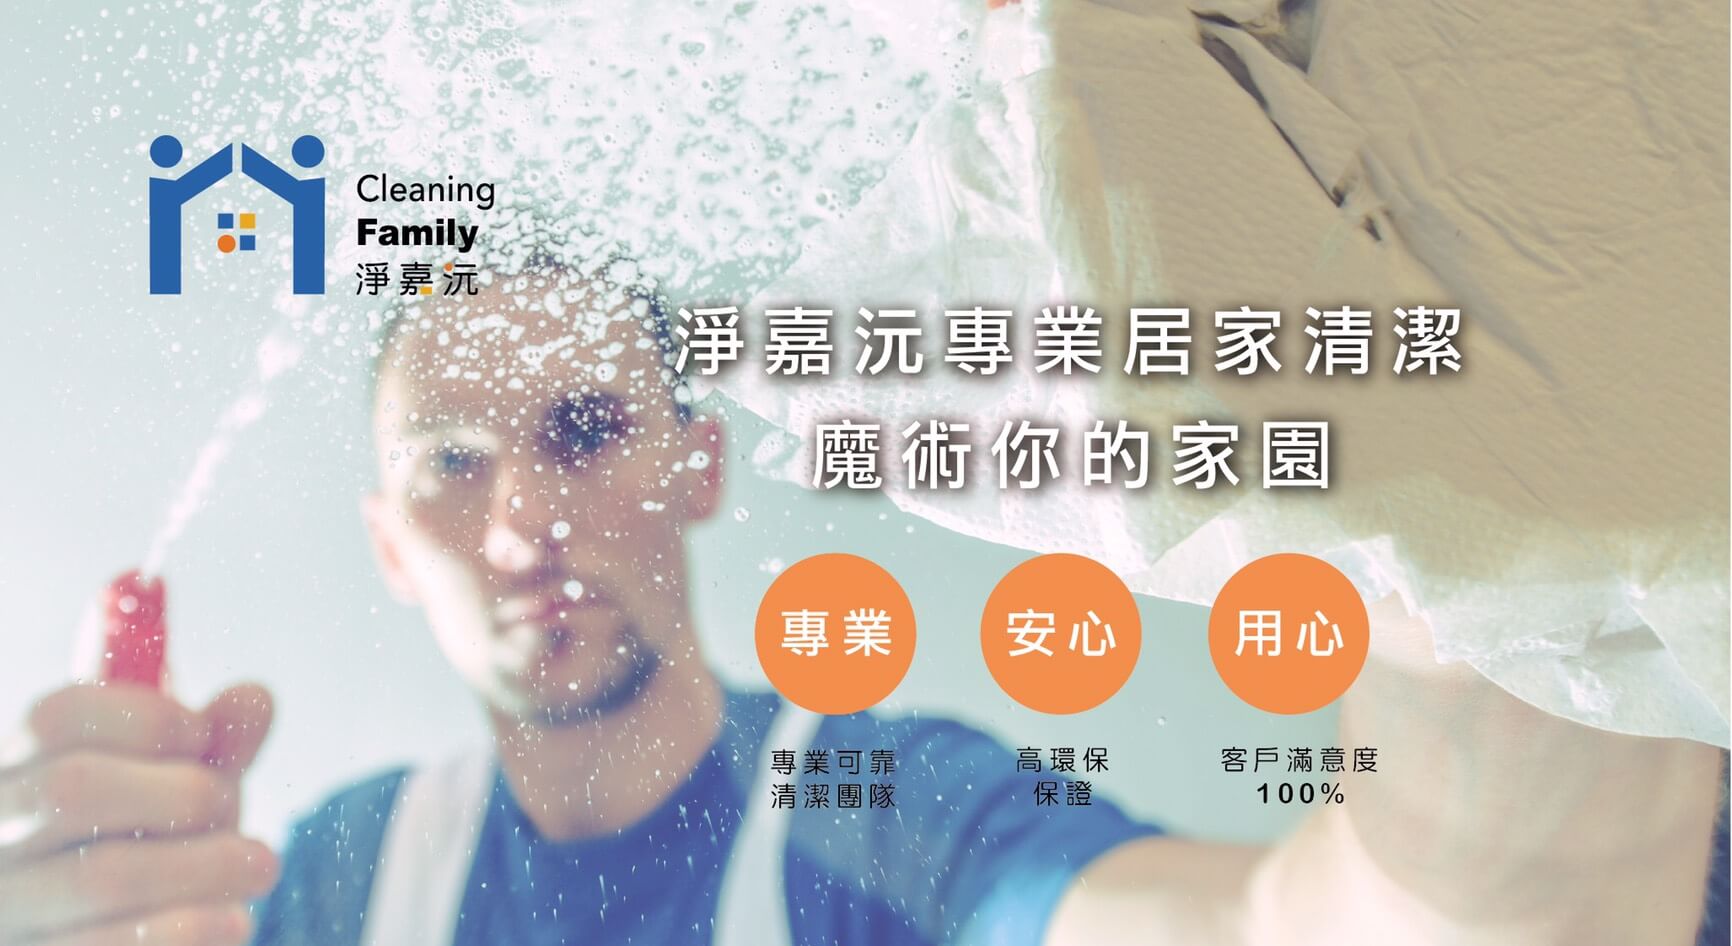 淨嘉沅專業居家清潔有限公司的第2張banner圖片